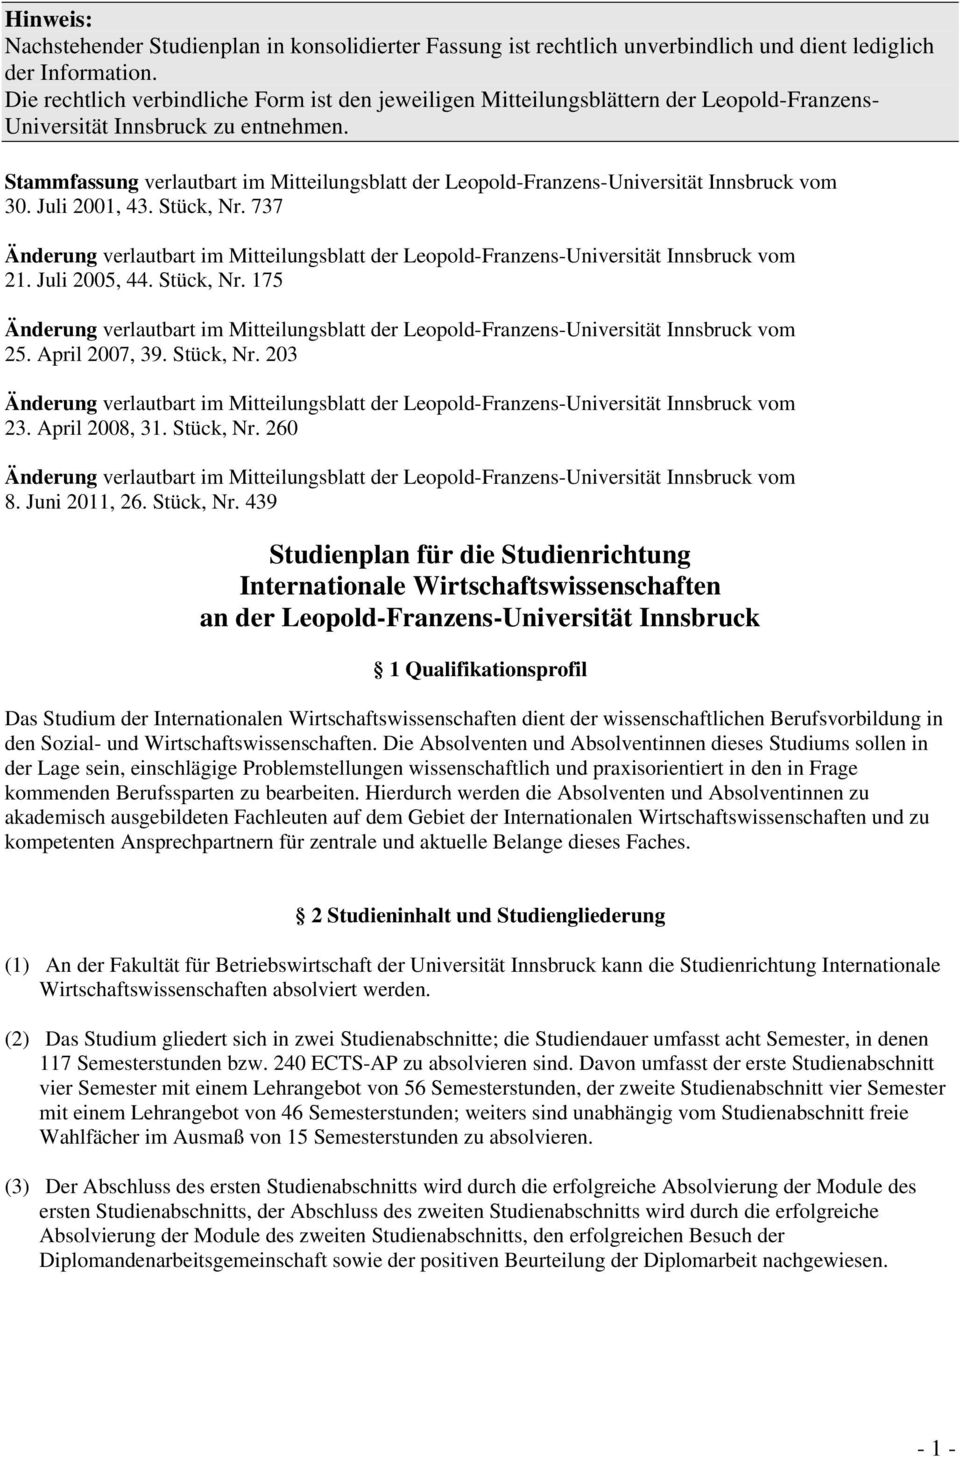 Stammfassung verlautbart im Mitteilungsblatt der Leopold-Franzens-Universität Innsbruck vom 30. Juli 2001, 43. Stück, Nr.